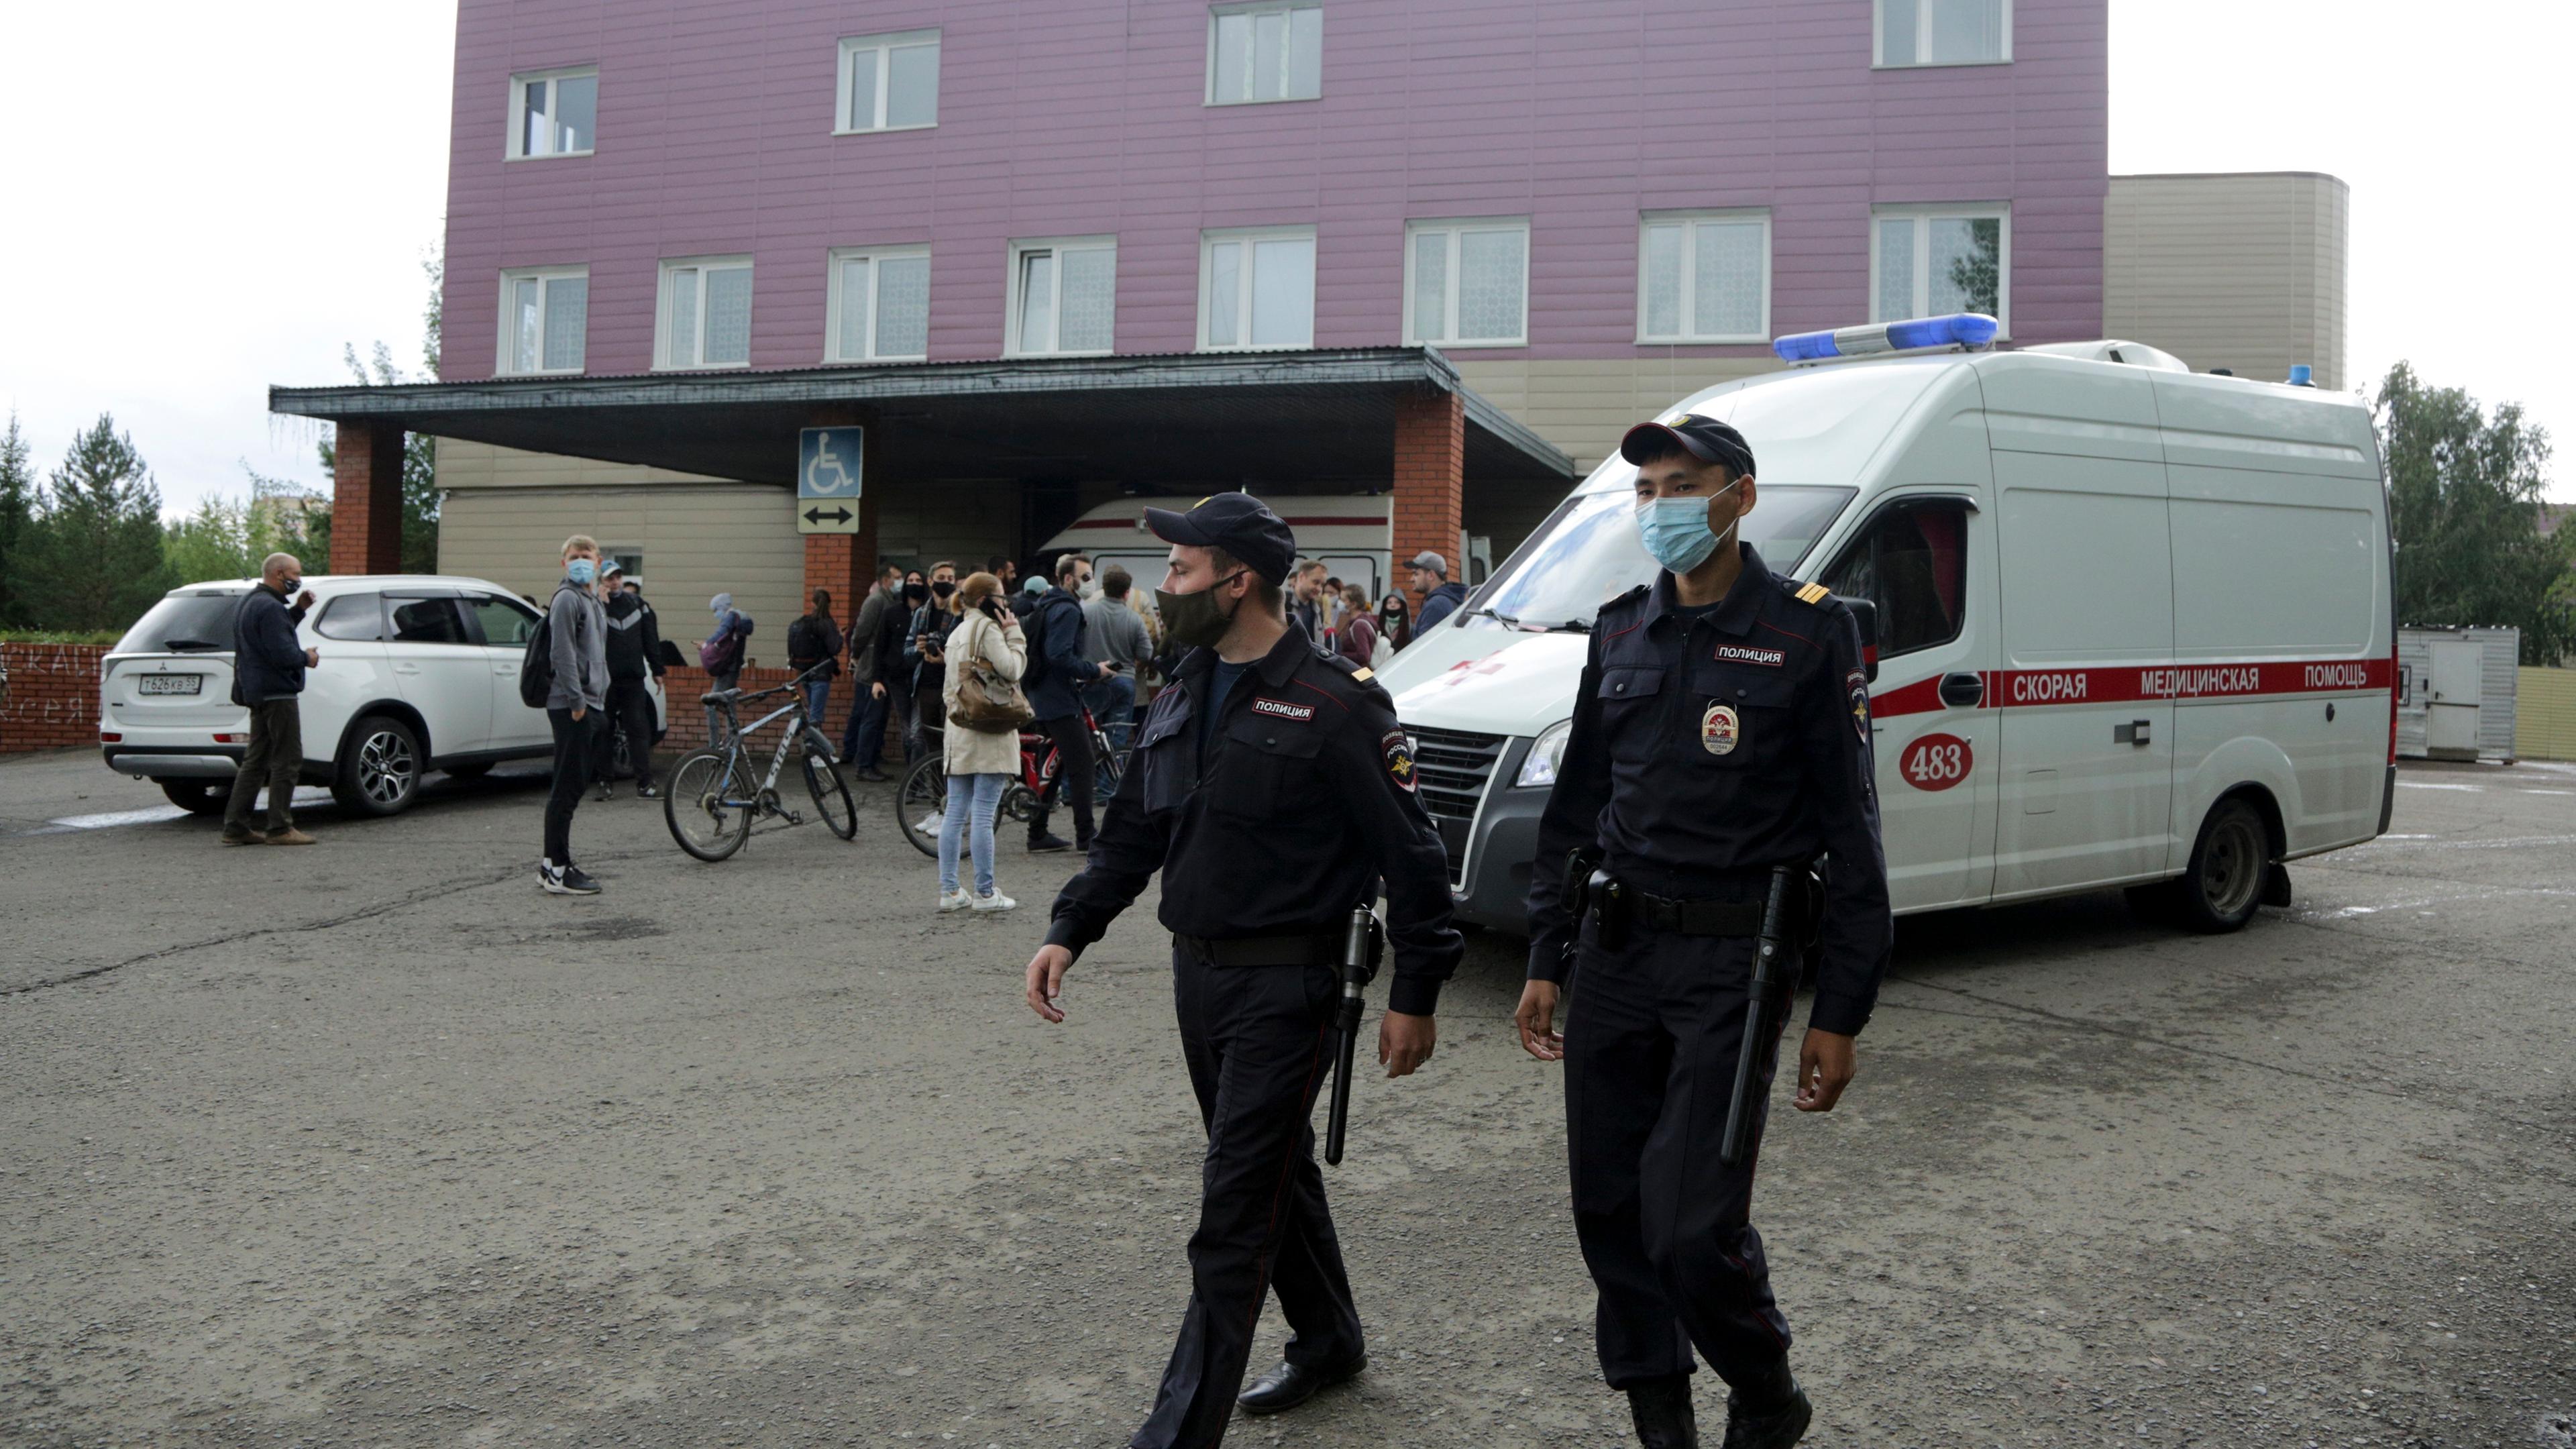 Polizisten patroullieren vor dem Ambulanzkrankenhaus Nr. 1, auf dessen Intensivstation der Oppositionspolitiker Nawalny wegen Vergiftungsverdachts behandelt wird.